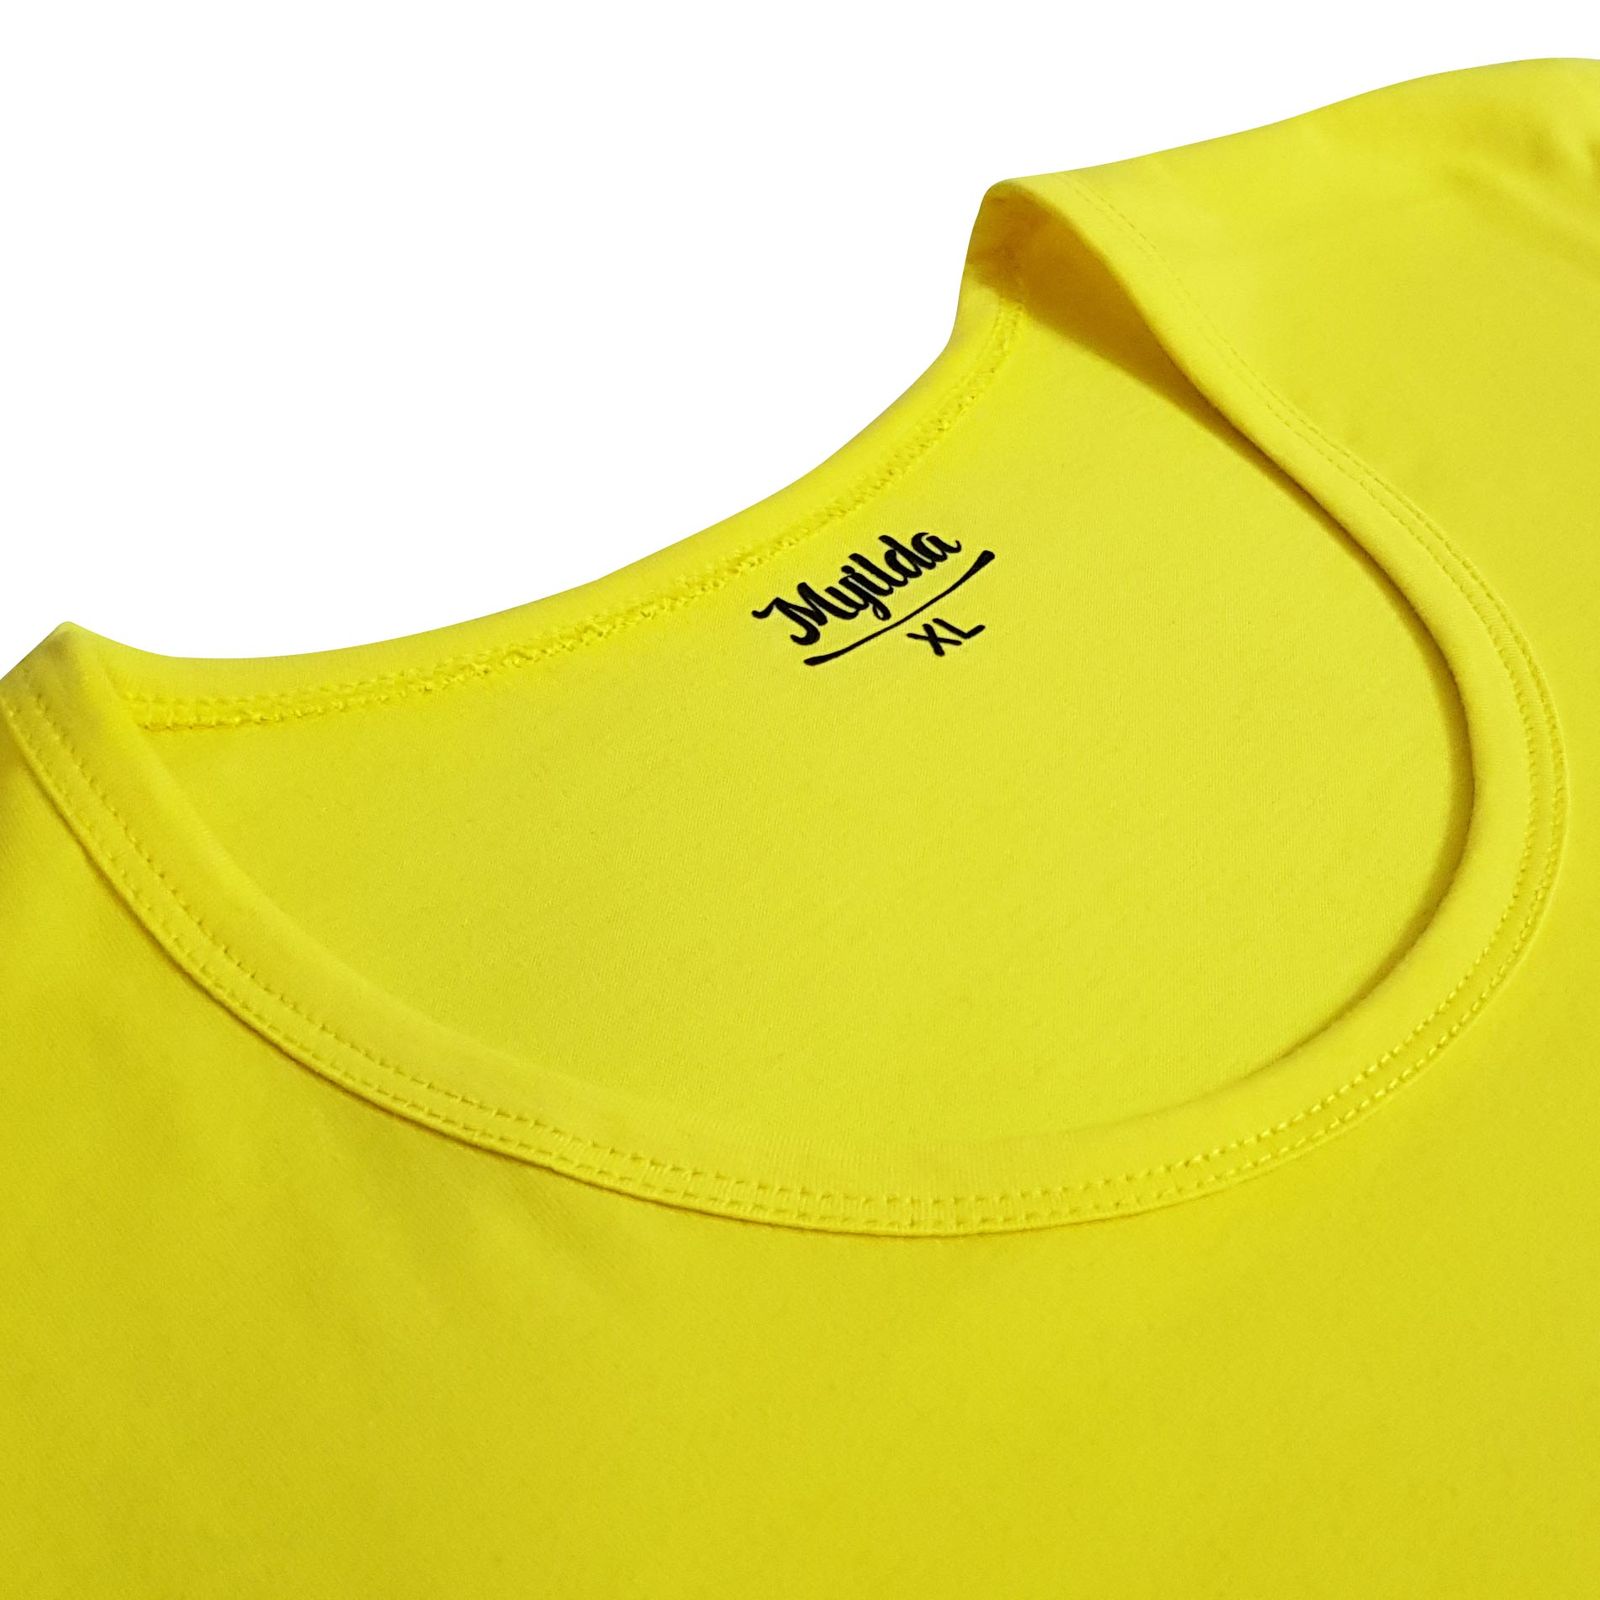 زیرپوش آستین دار مردانه ماییلدا مدل پنبه ای کد 4710 رنگ زرد -  - 6